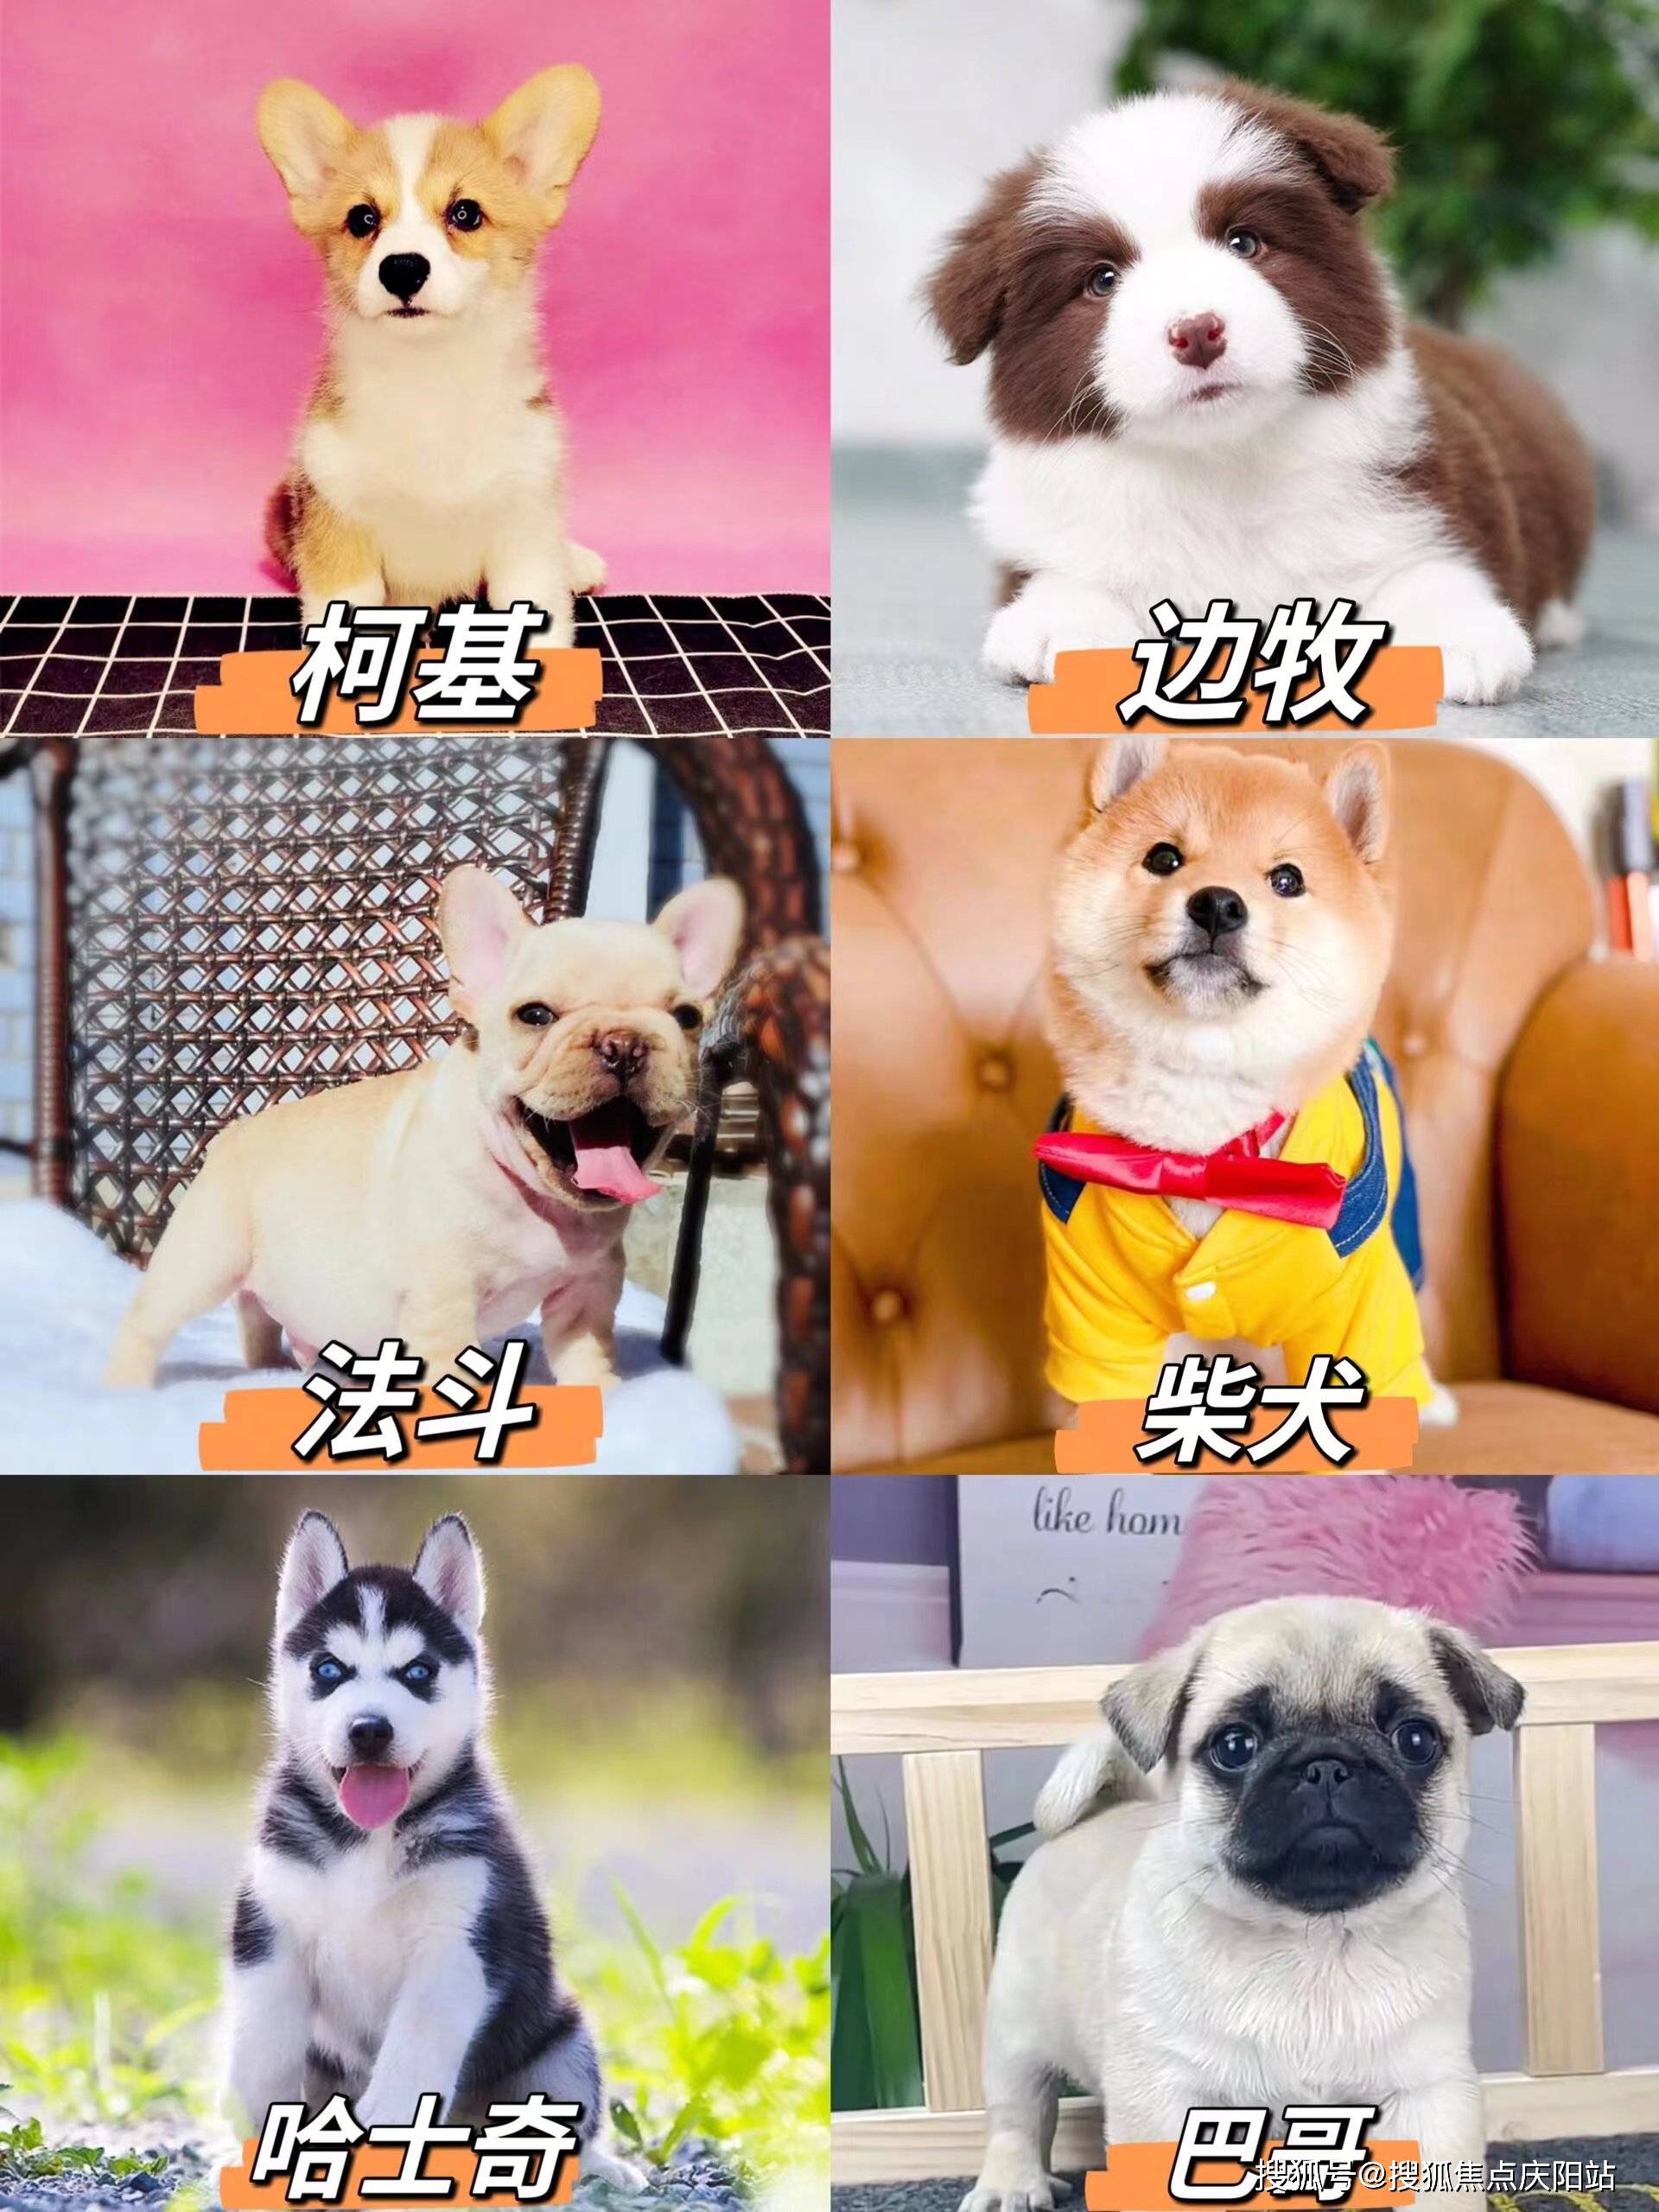 犬首页网站(苏州姑苏区)买博美犬的宠物店哪家口碑好